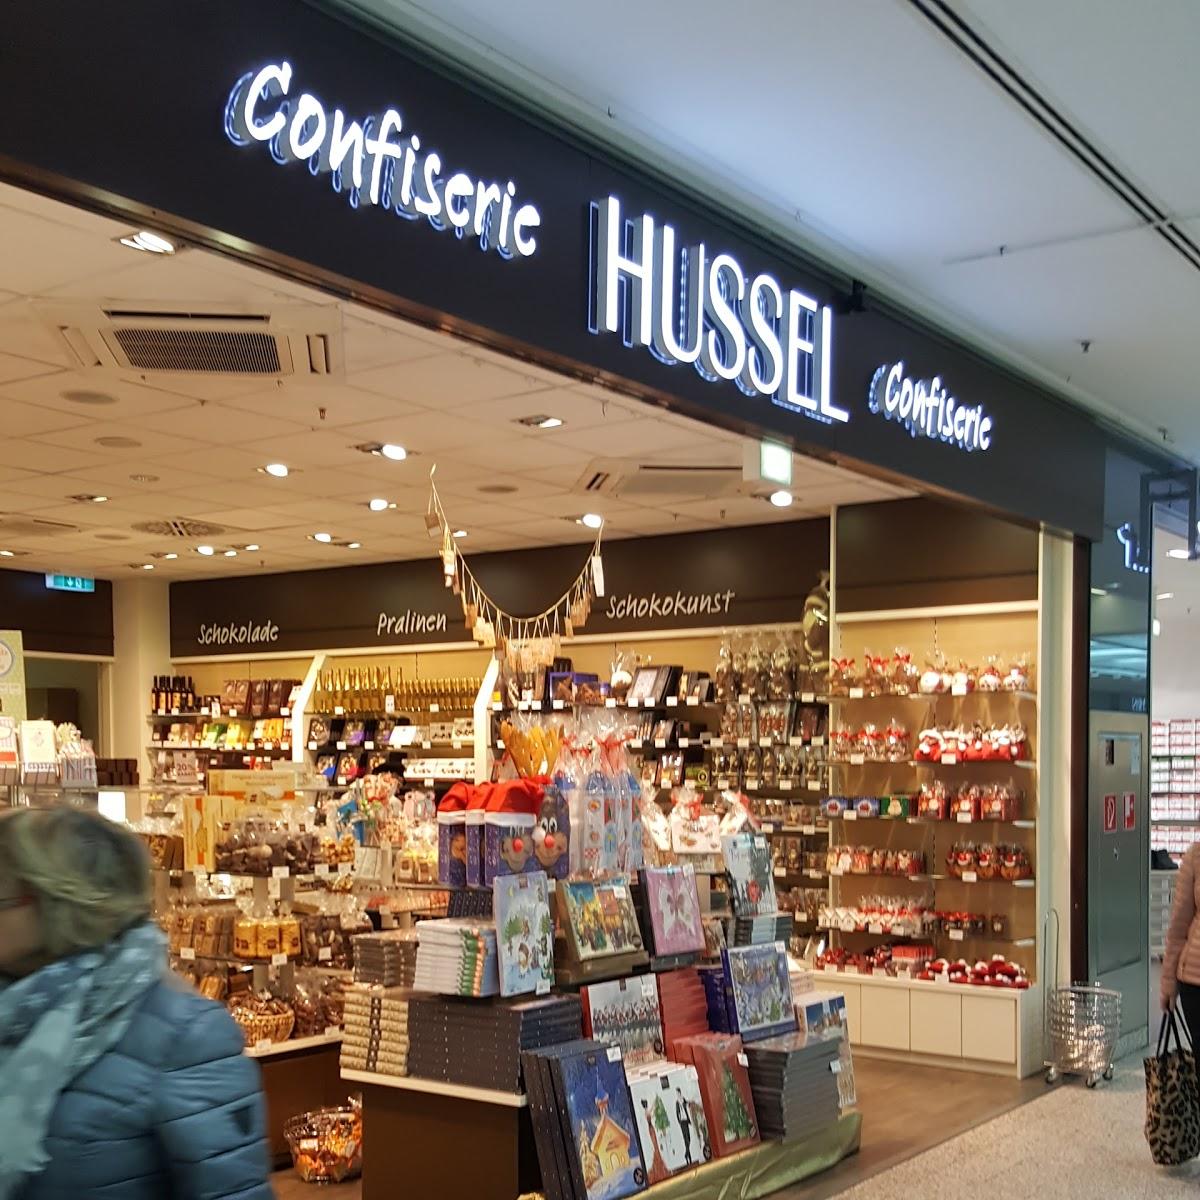 Restaurant "HUSSEL Confiserie" in Berlin